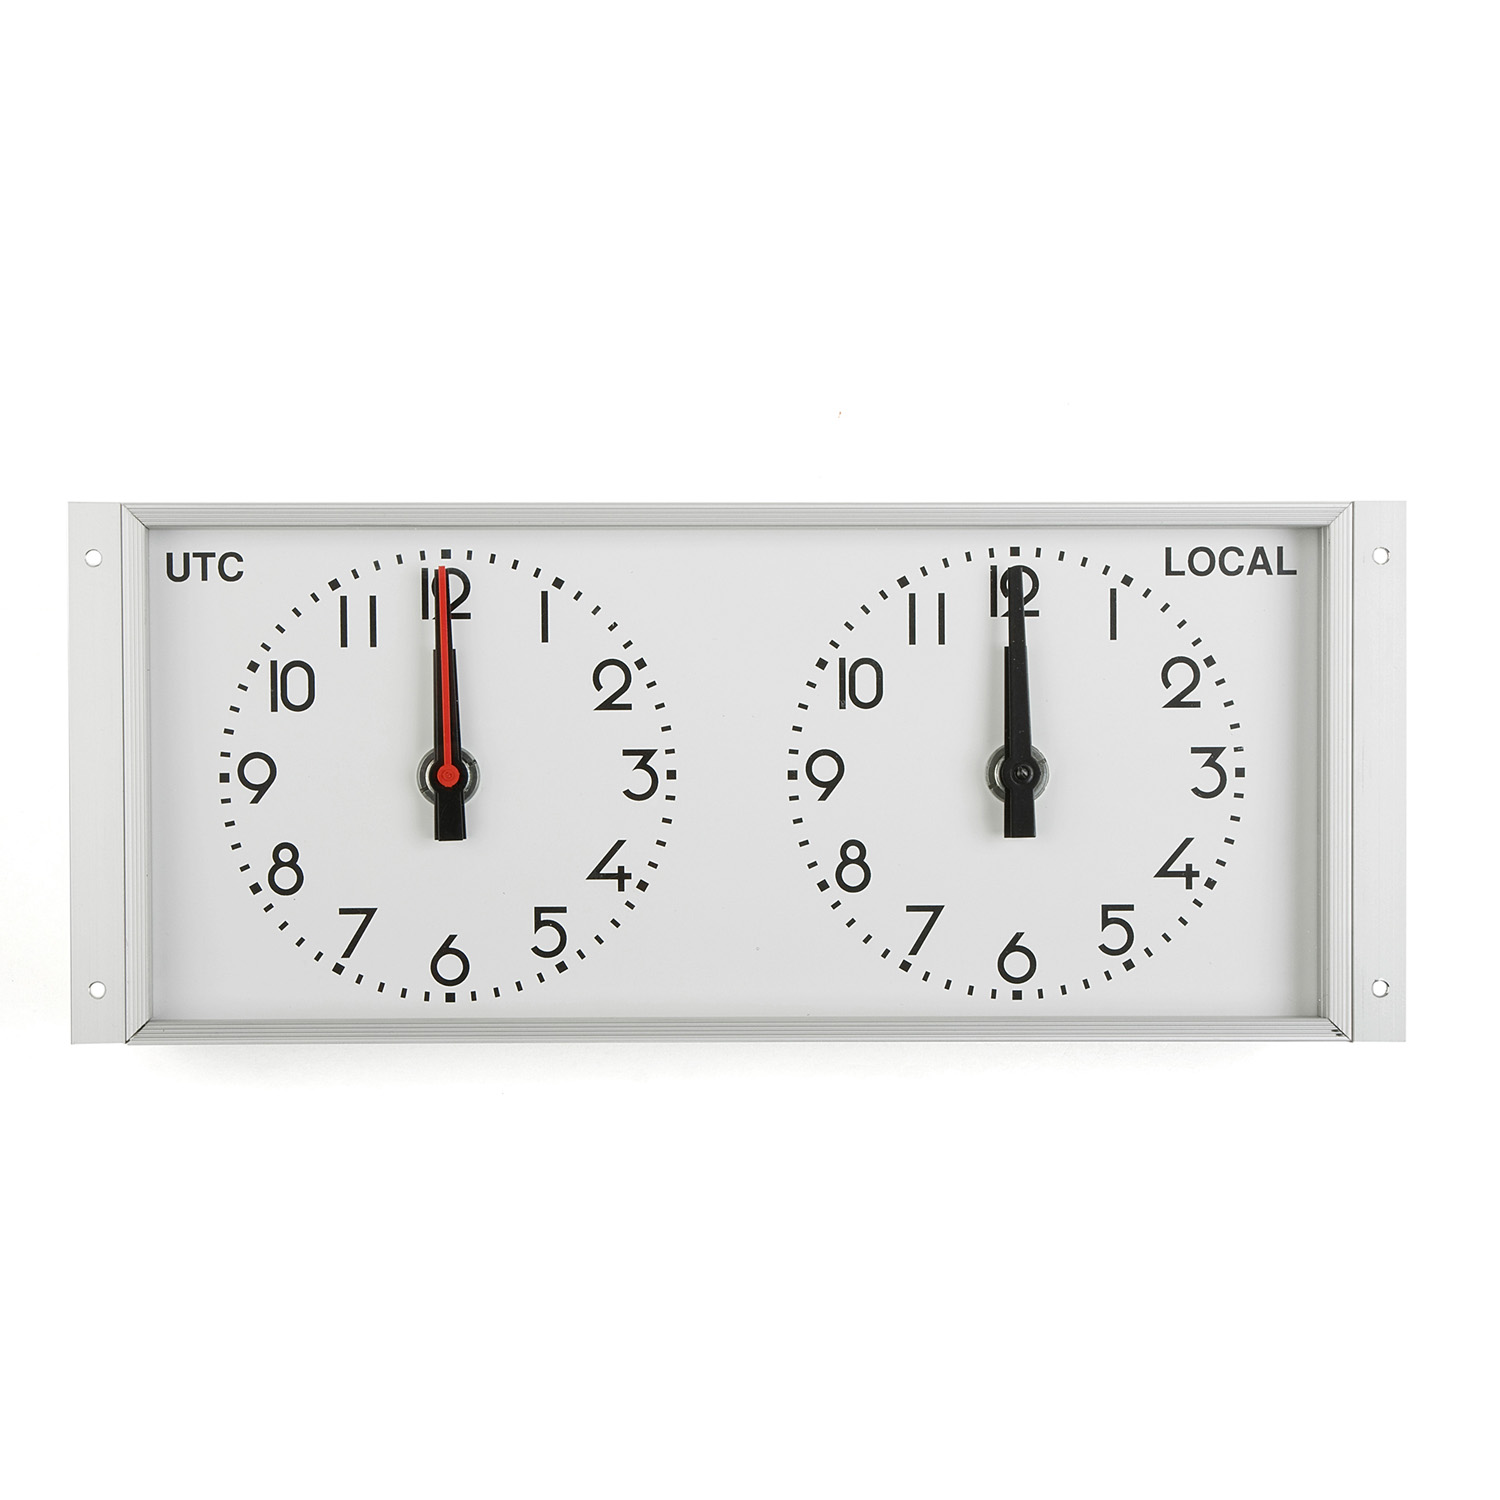 2310601025 Vingtor Stentofon Master clock